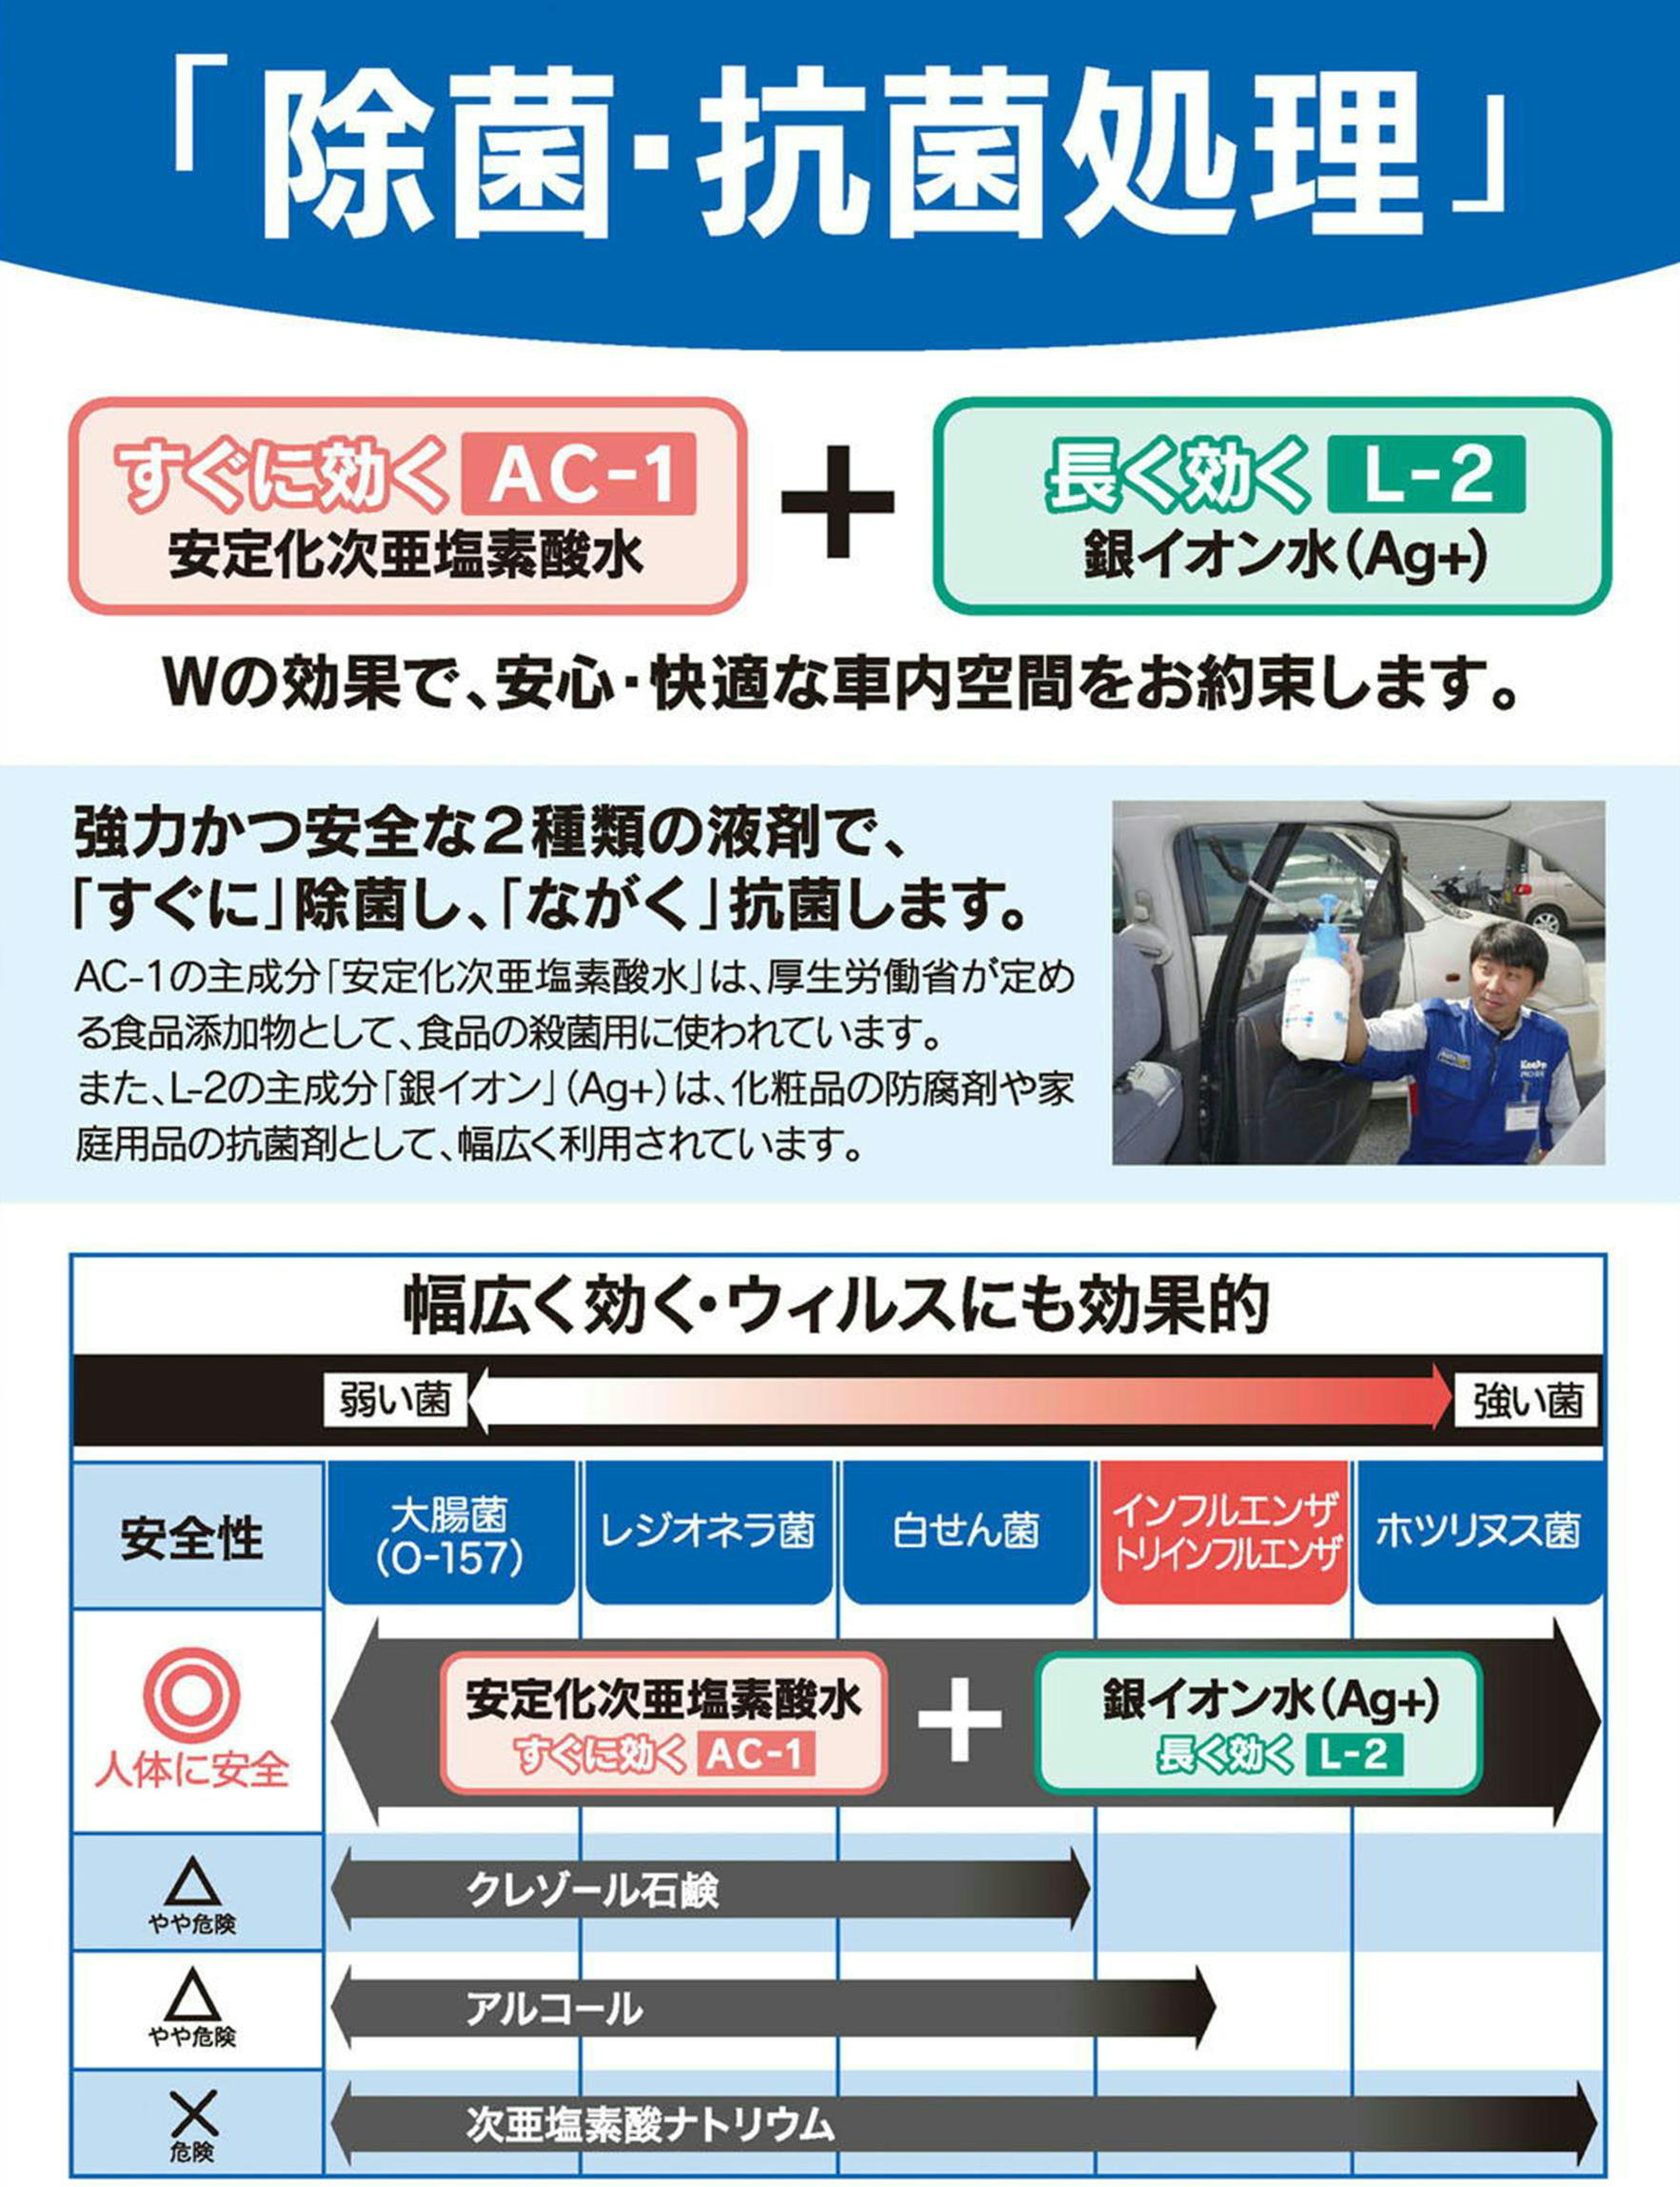 コーティング・洗車 メニュー - キーパープロショップの板倉石油(株 